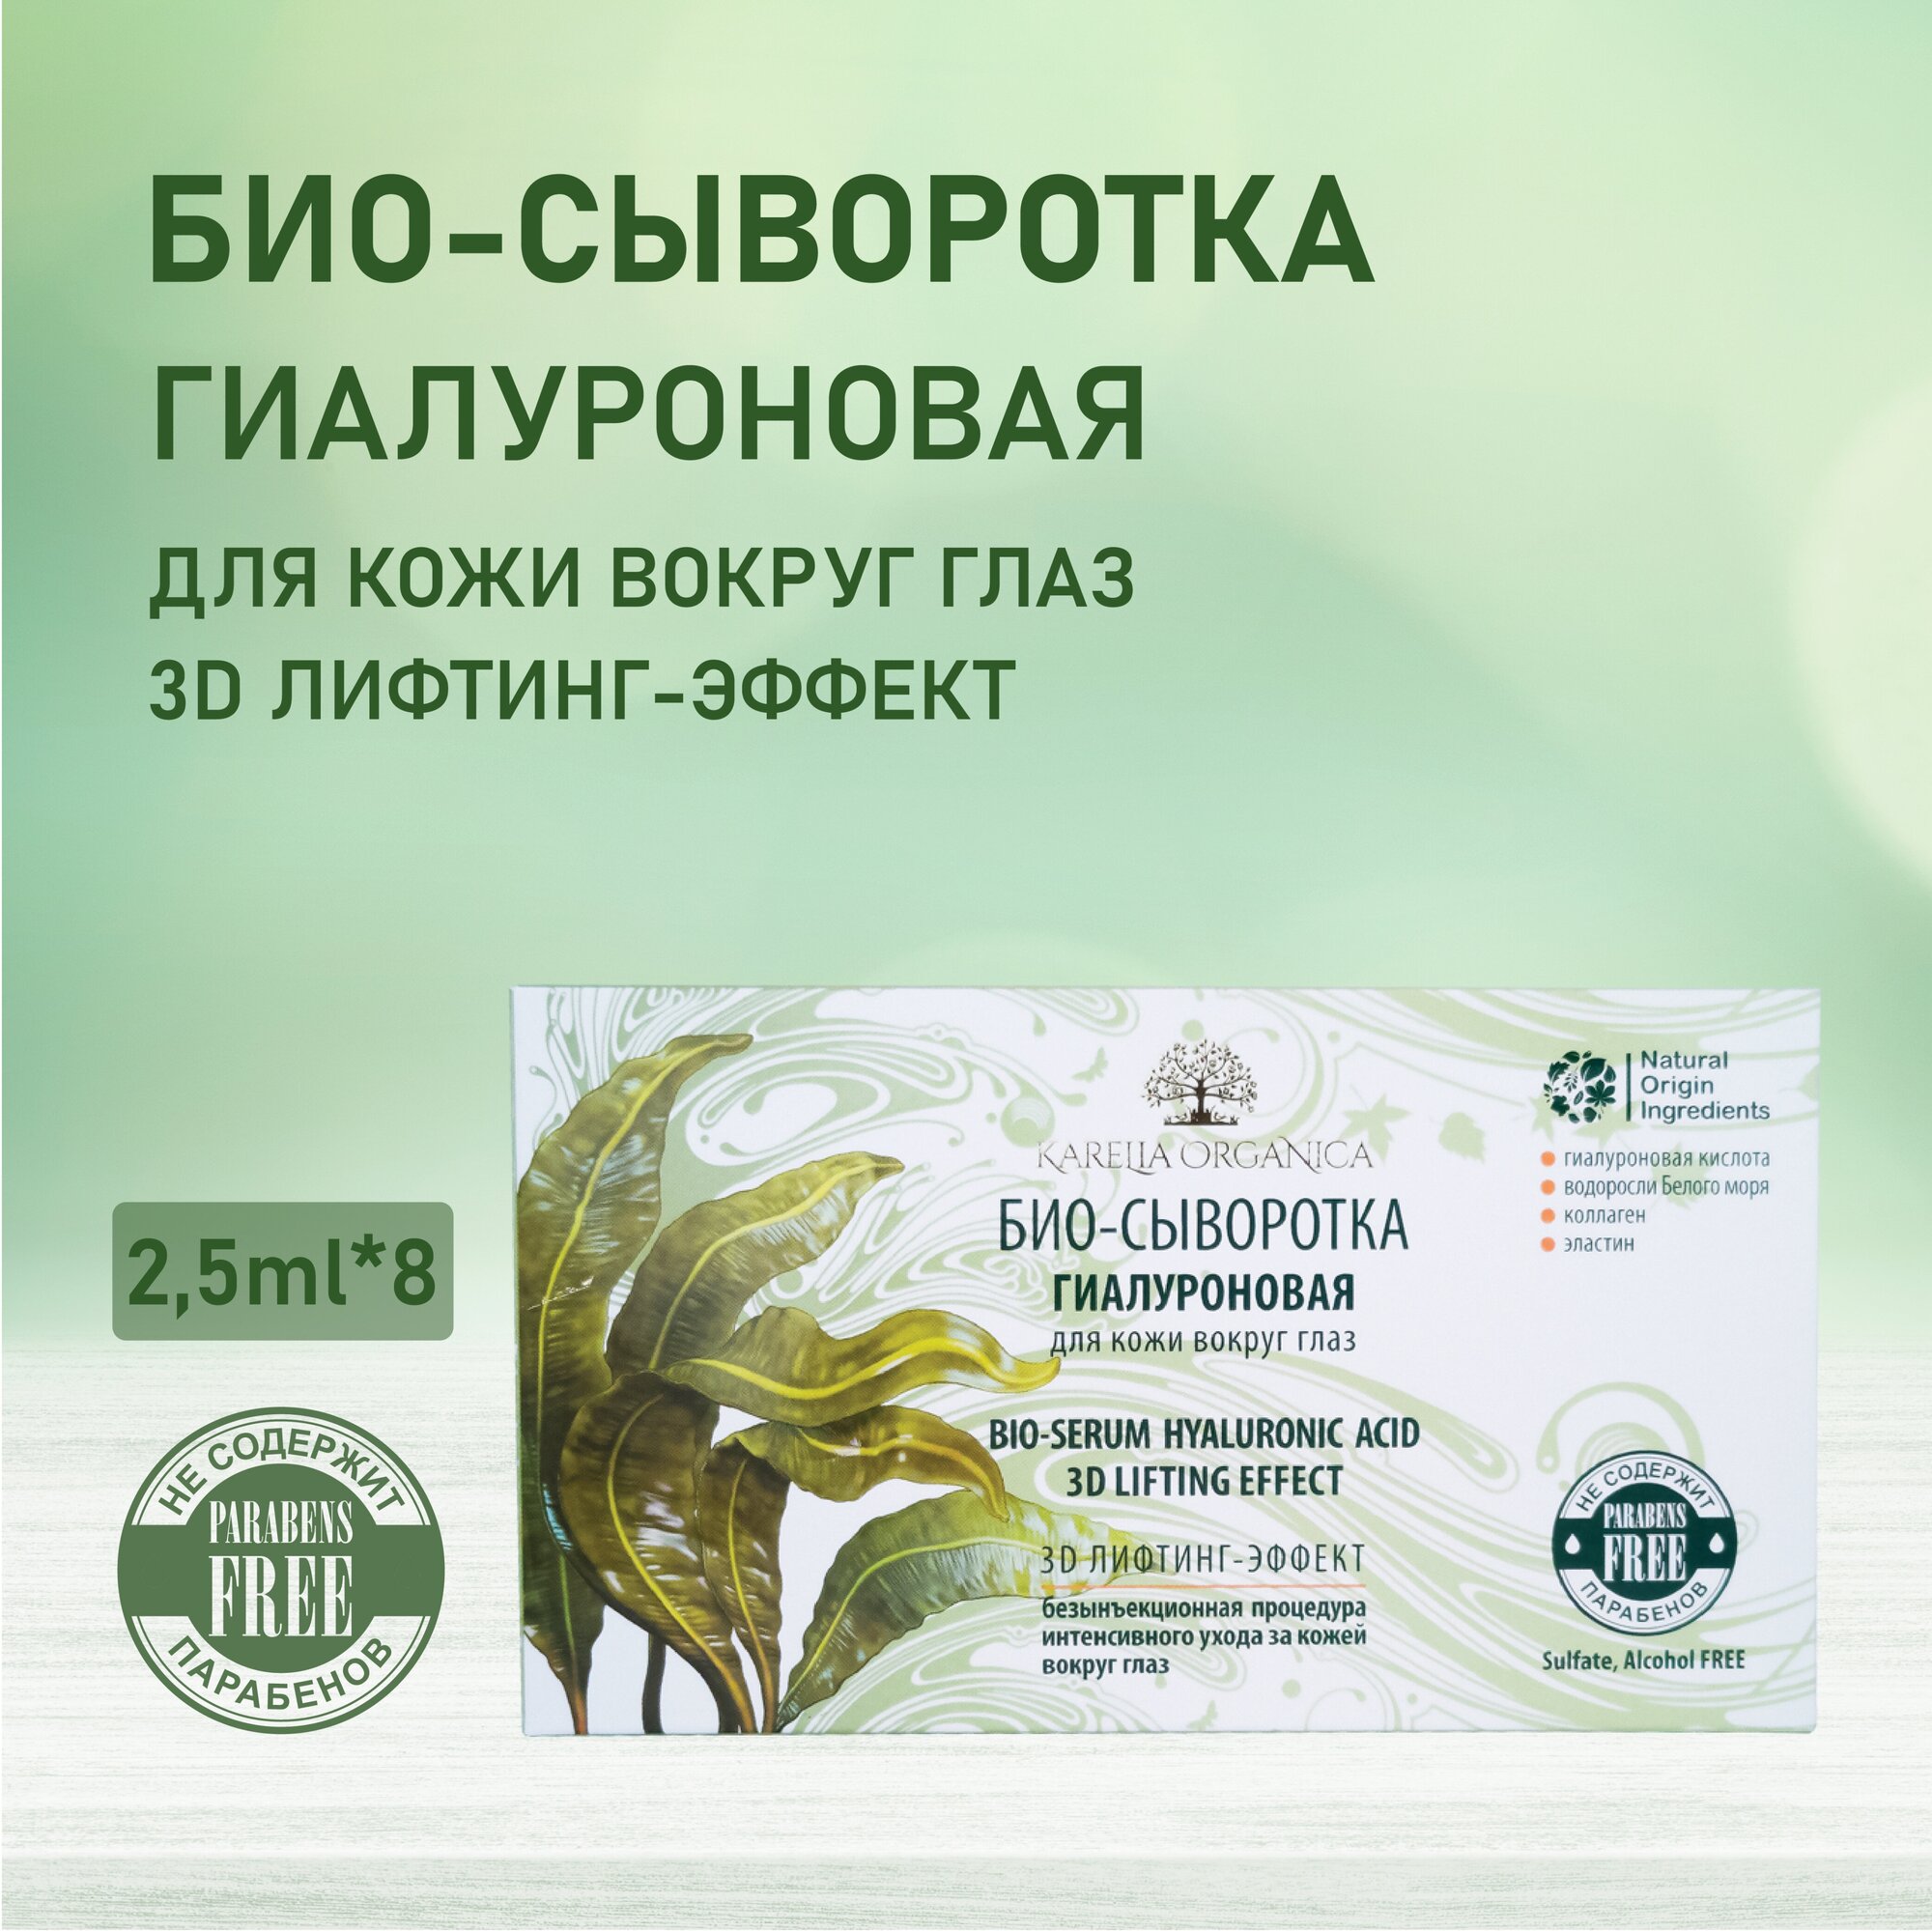 Ампулы «Karelia Organica» Био-сыворотка Гиалуроновая для кожи вокруг глаз 3D лифтинг- эффект, 2,5*8